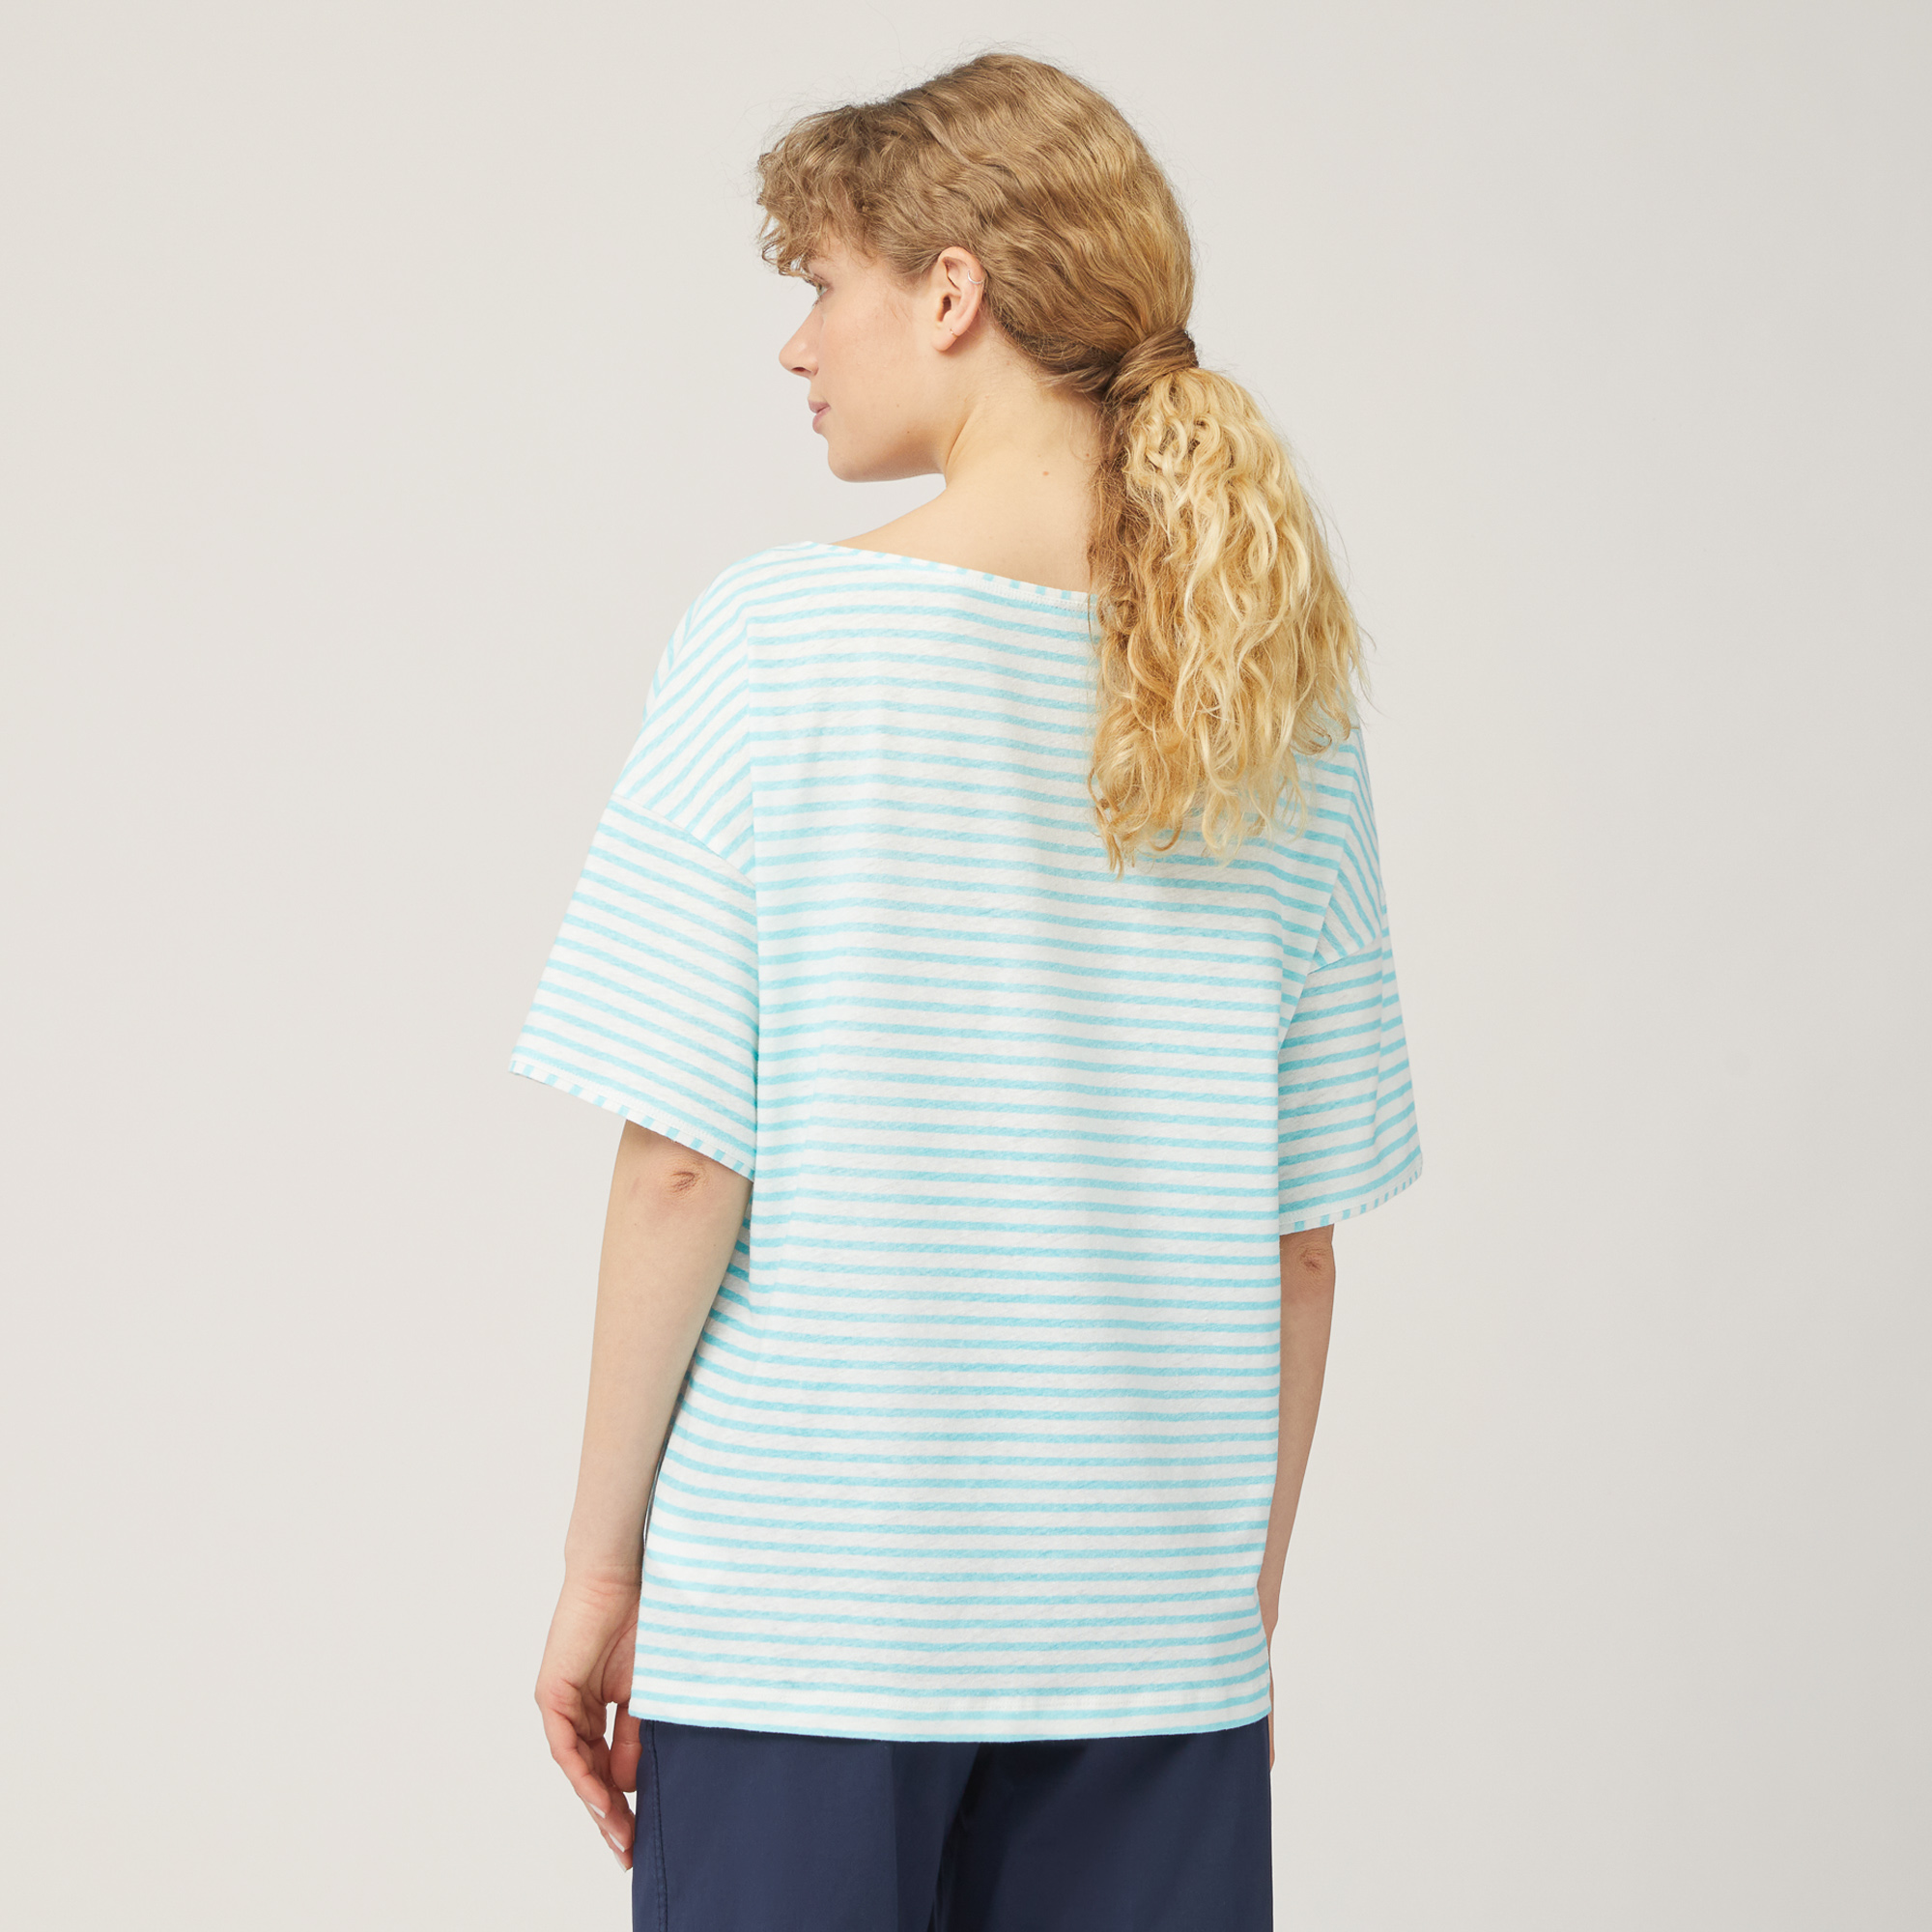 Striped Comfort Fit T-Shirt, Light Blue, large image number 1